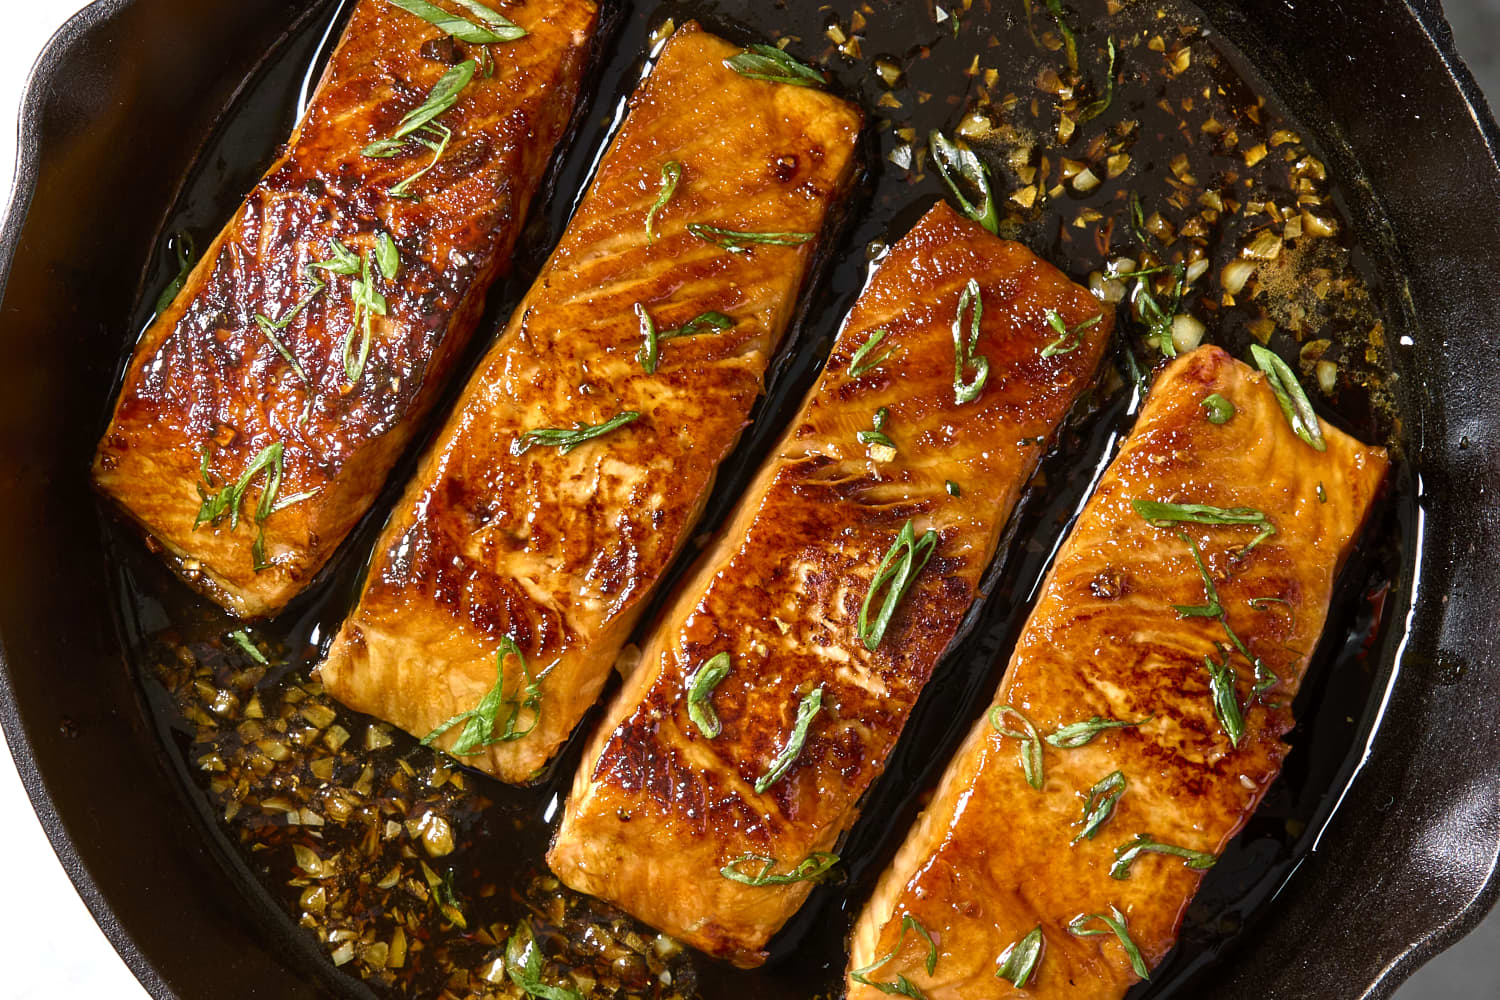 Honey Garlic Salmon Recipe (5 ingredients, 20 minutes)